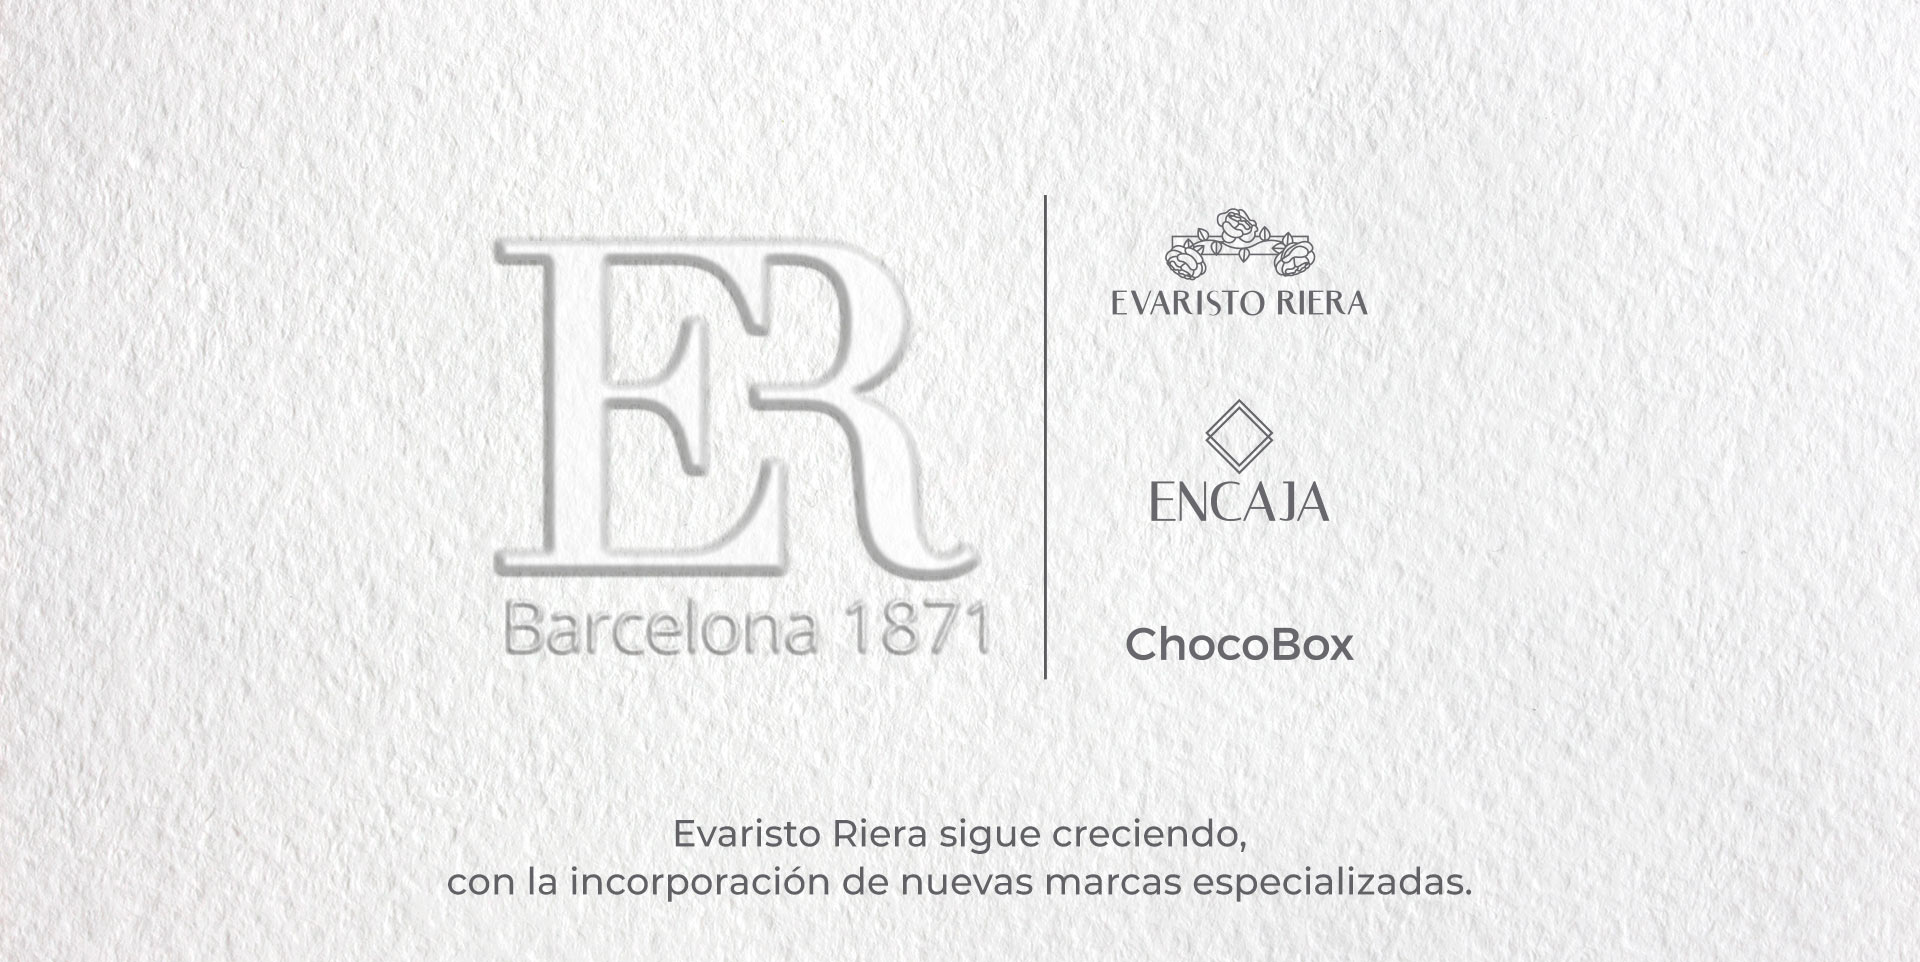 evaristo-riera-encaja-chocobox-1871-barcelona-ES.jpg